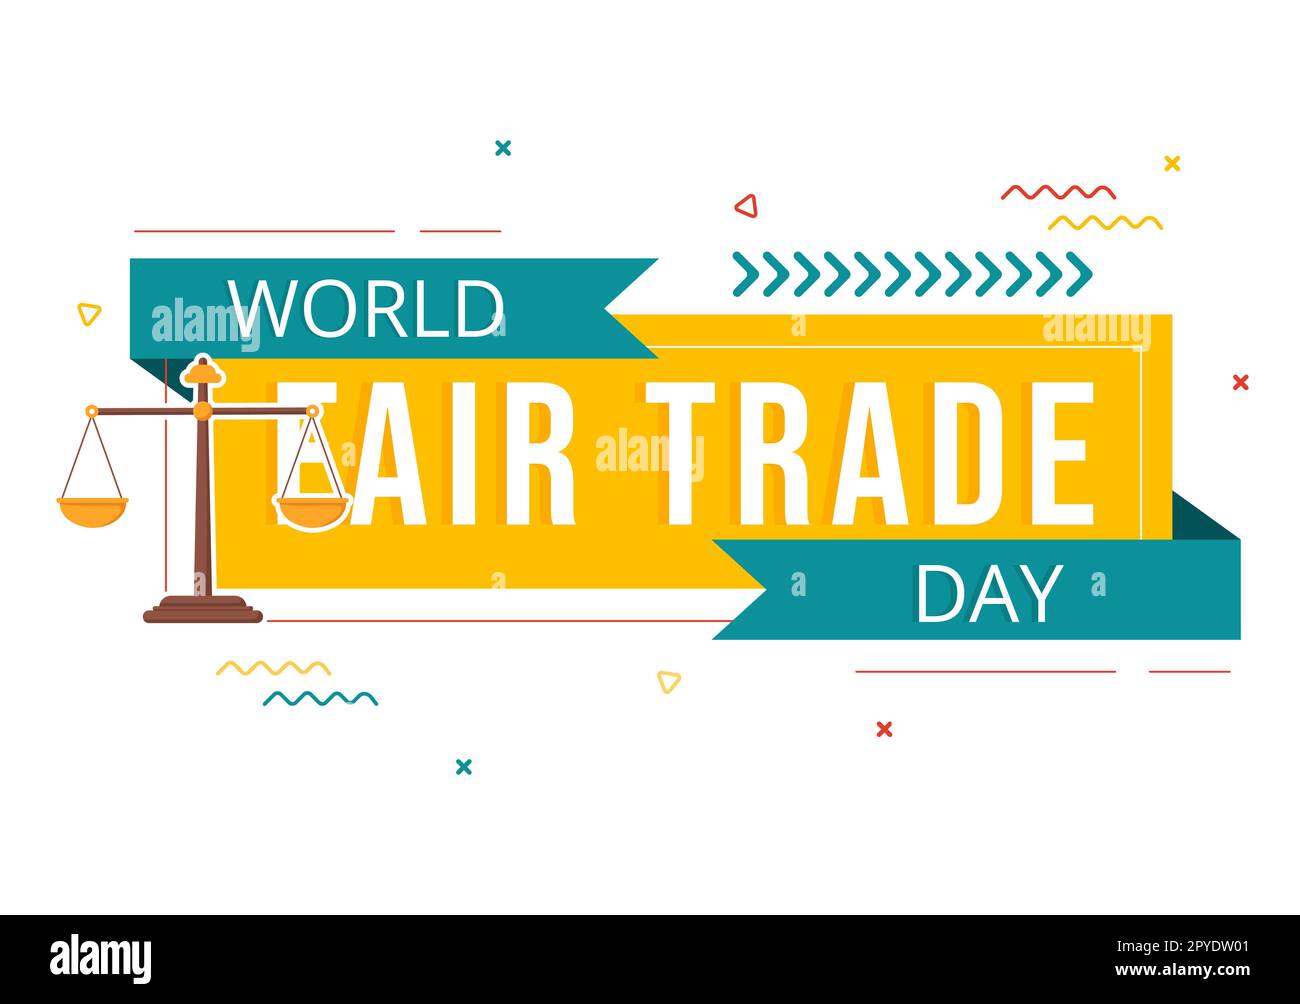 Illustration zum Welttag des fairen Handels mit digitalen Skalen, Climate Justice und Planet Economic in flachem Cartoon, handgezeichnet für Landing-Page-Vorlagen Stockfoto